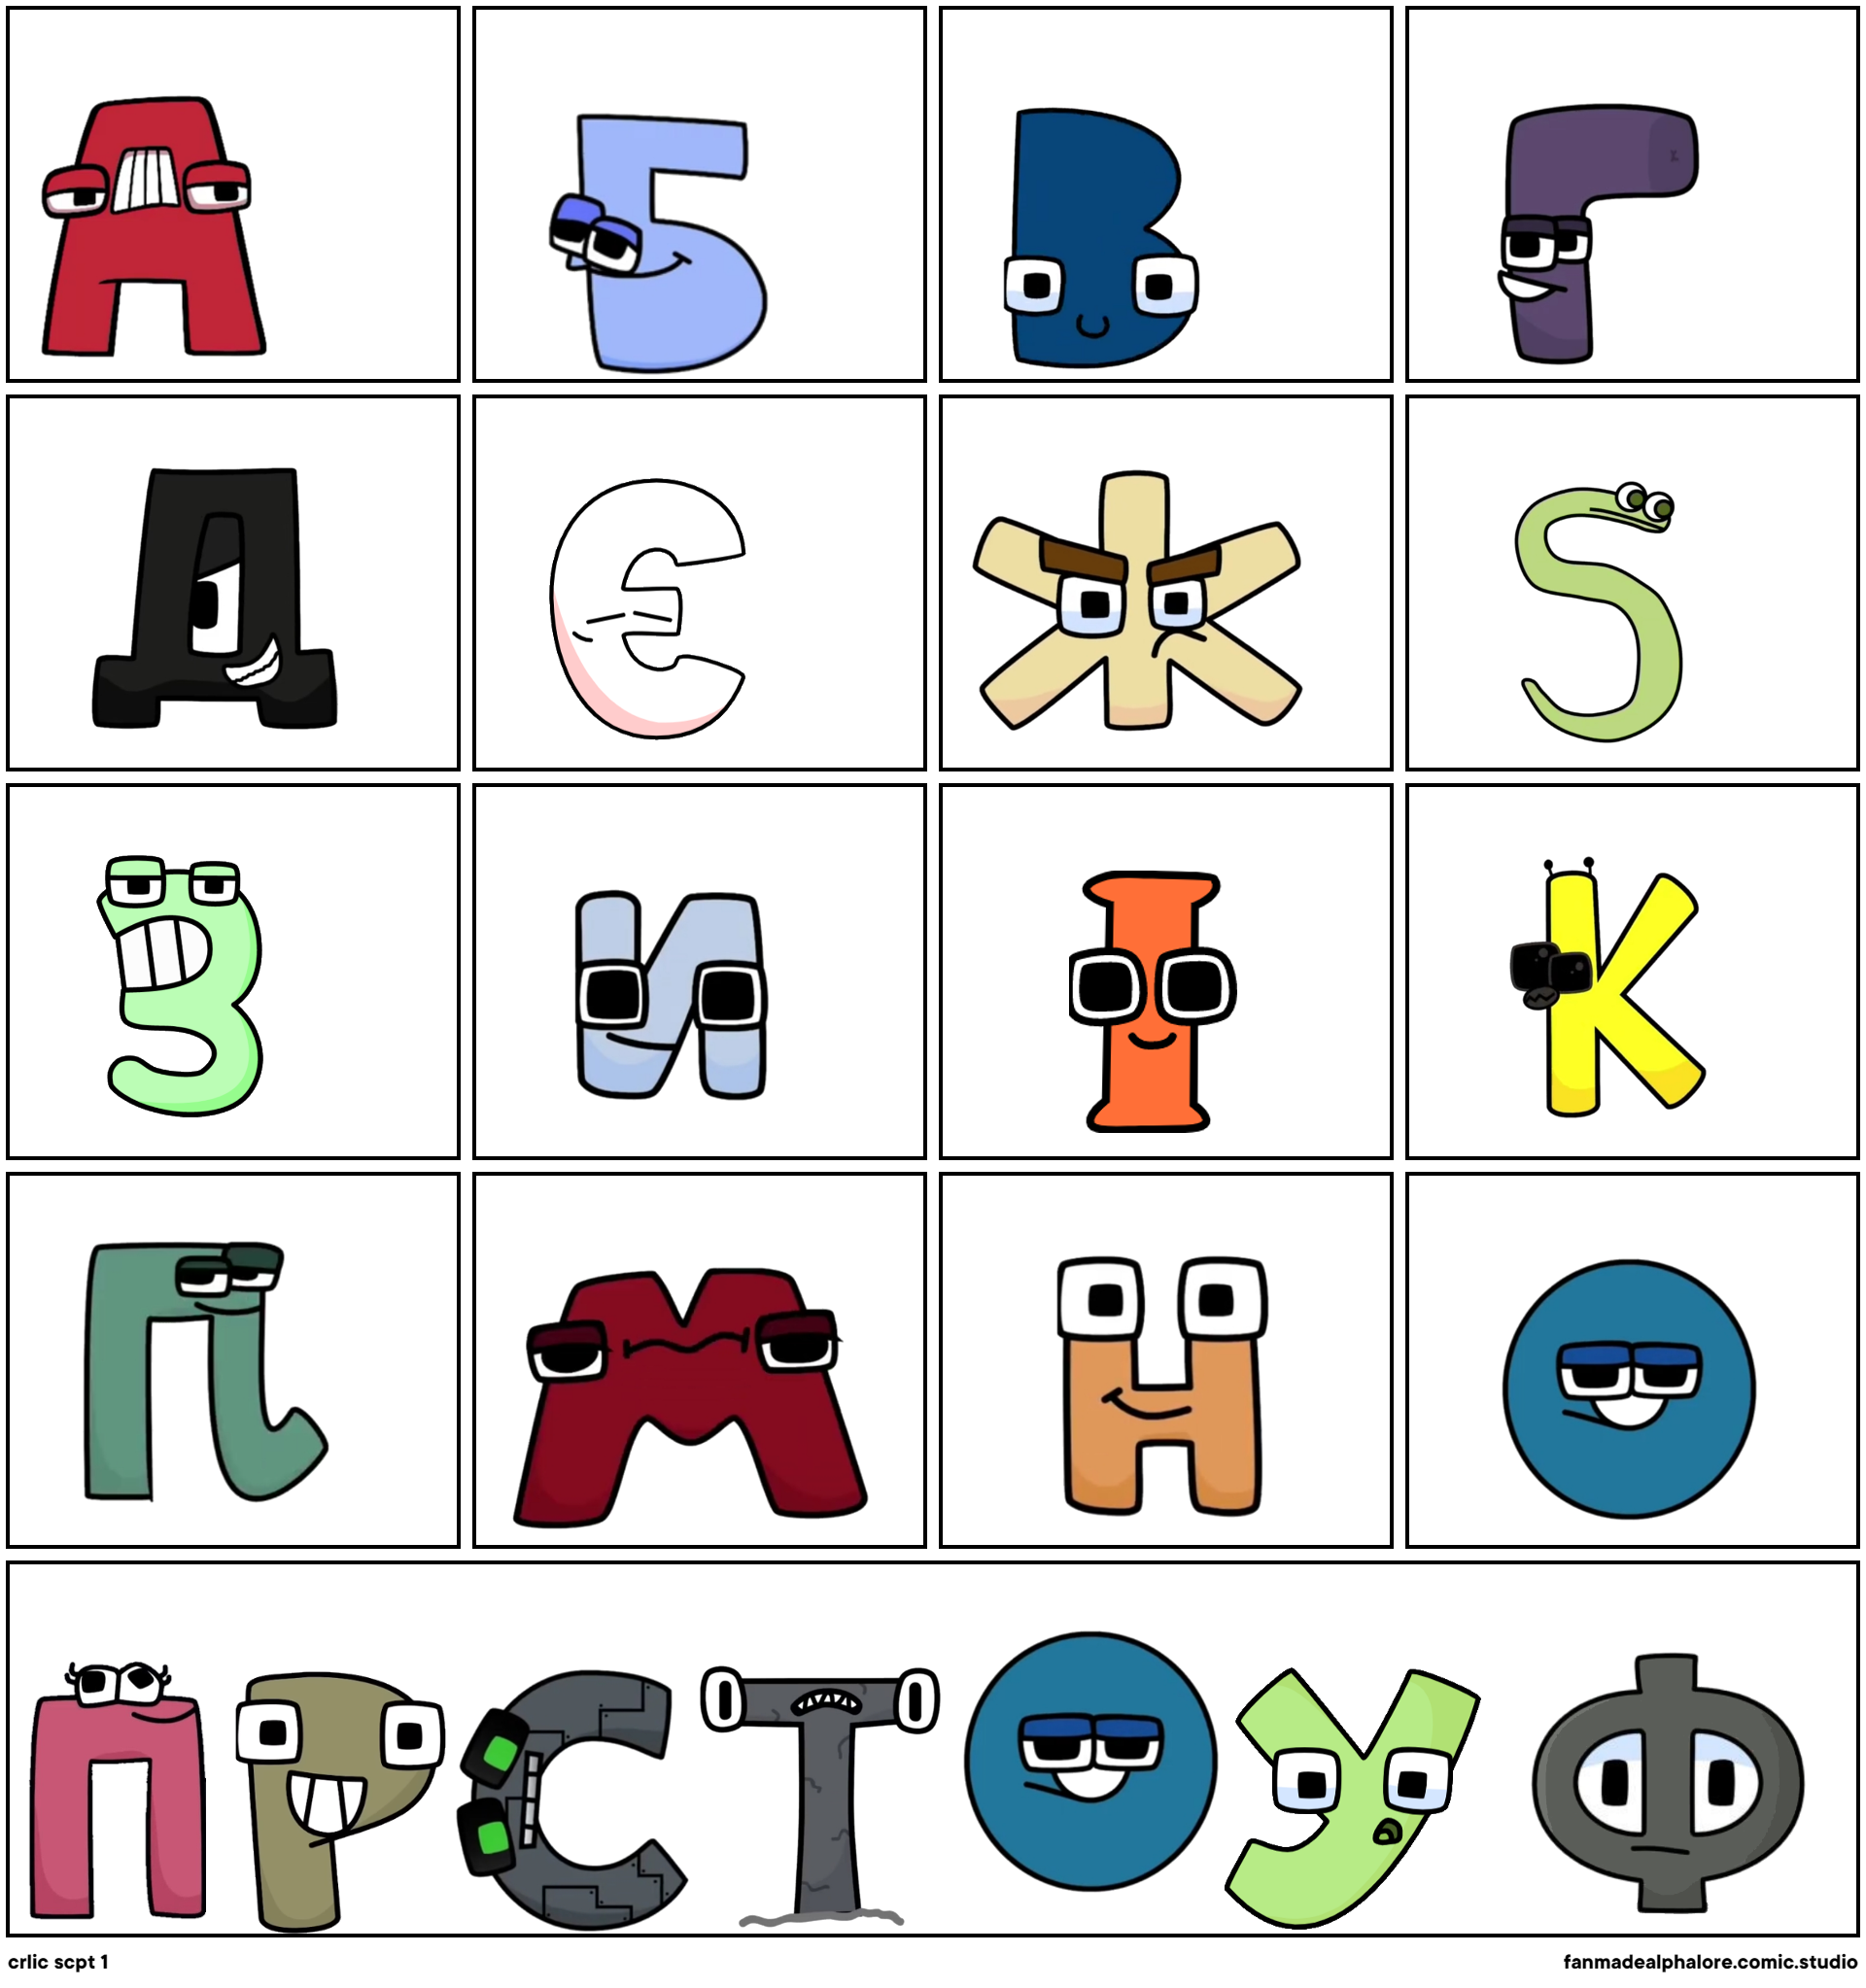 Ukrainian alphabet lore A-PE - Comic Studio